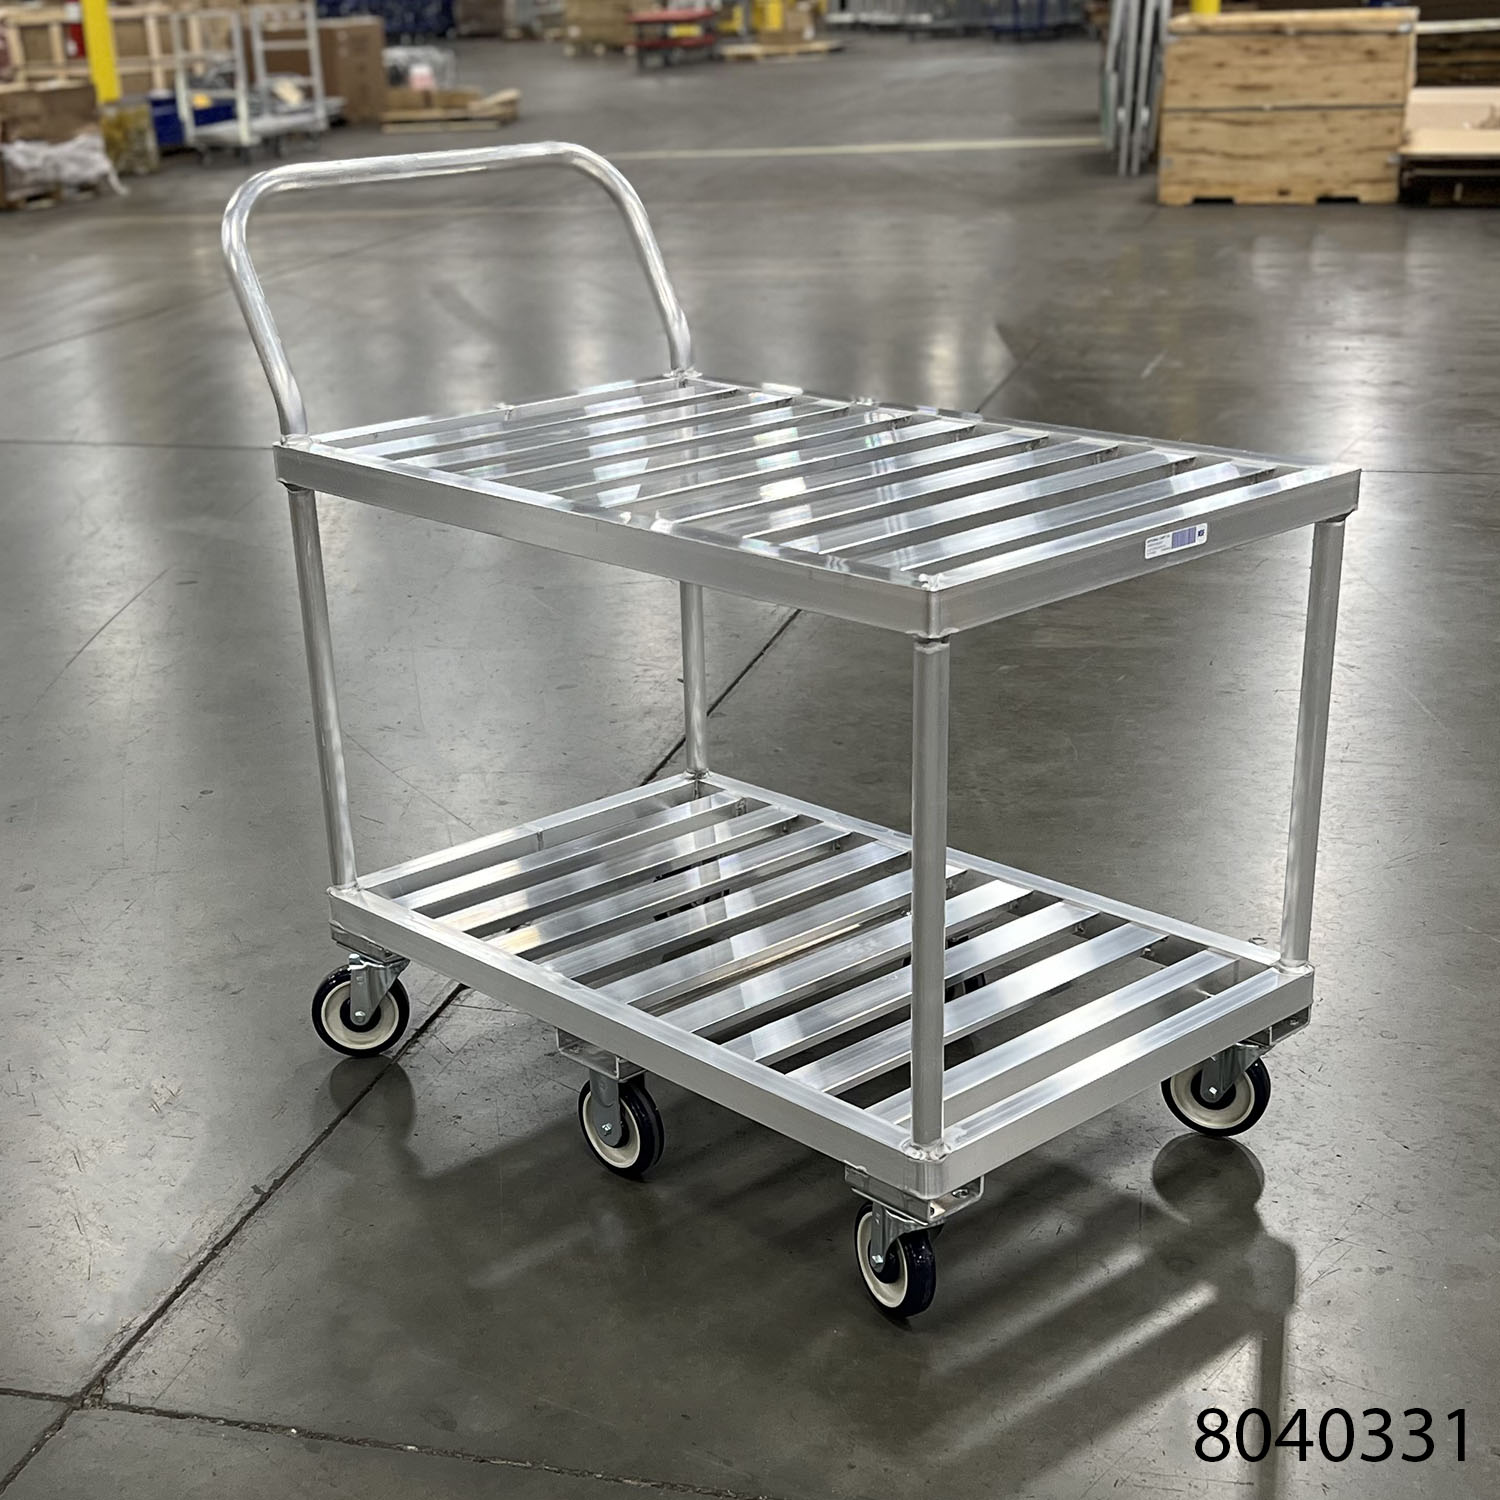 Produce Stocking Cart industrial cart picking cart sushi cart salad bar cart deli cart stream table cart buffet cart